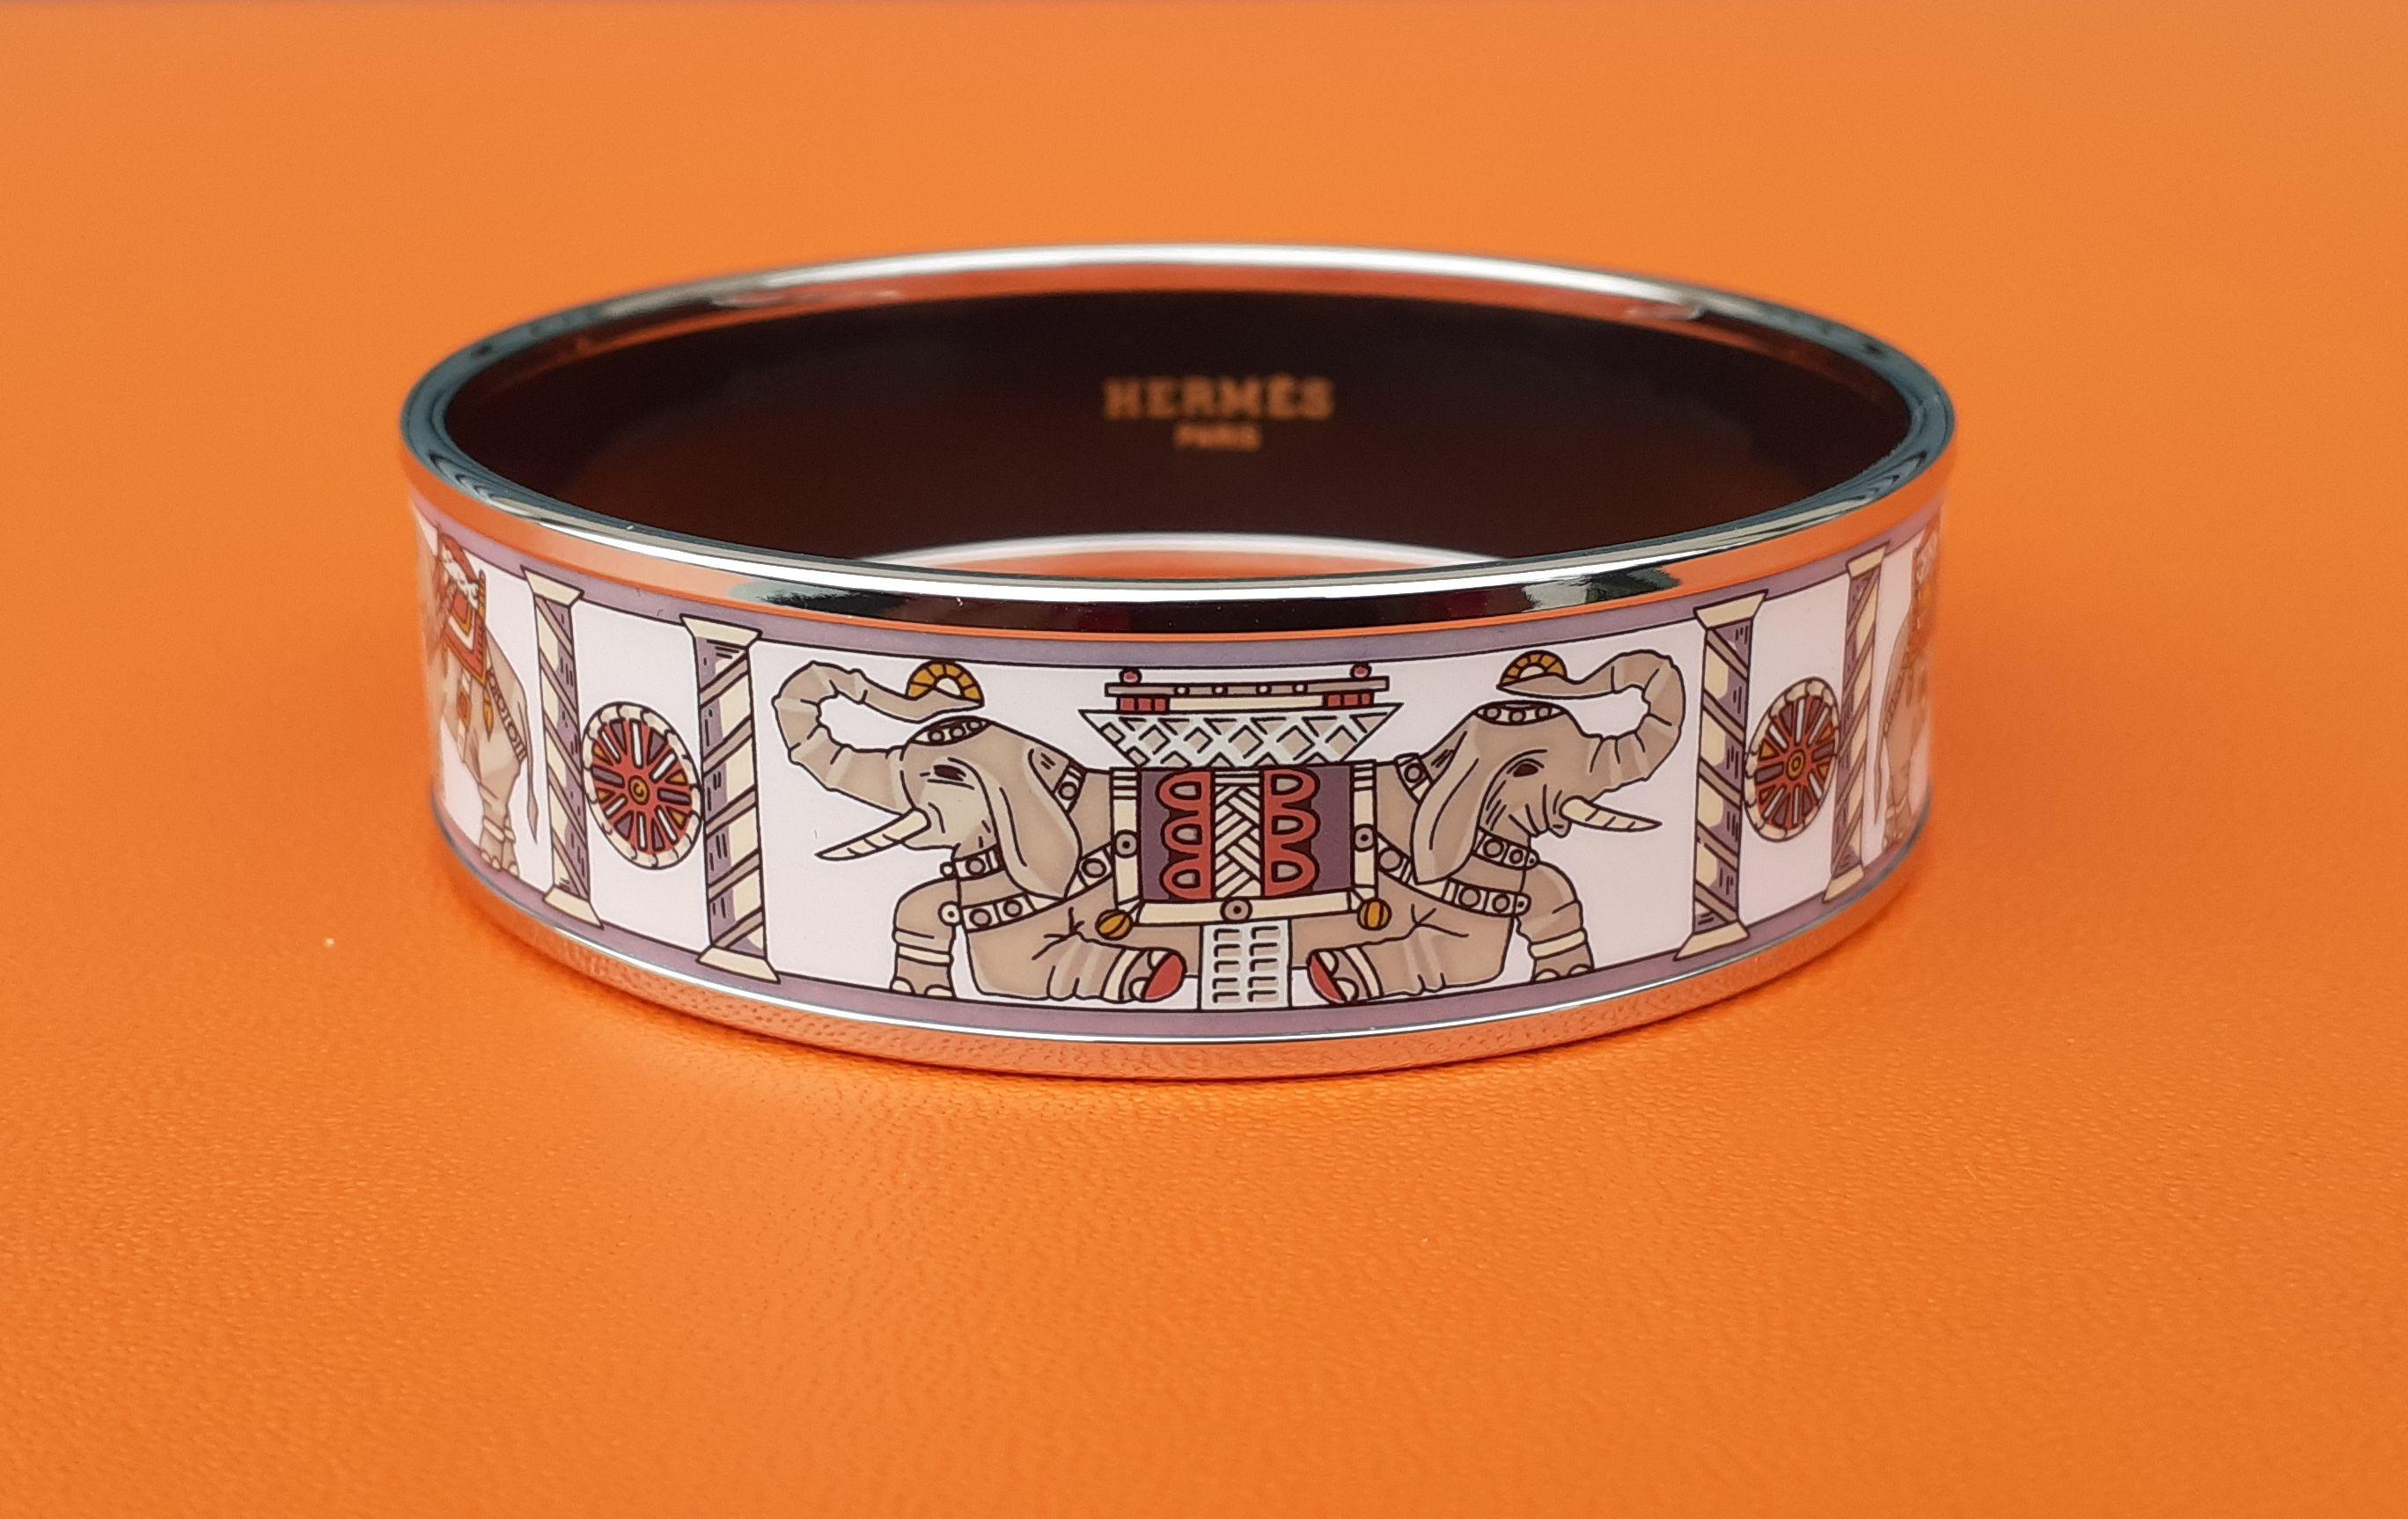 Wunderschönes authentisches Hermès-Armband

Druck: 